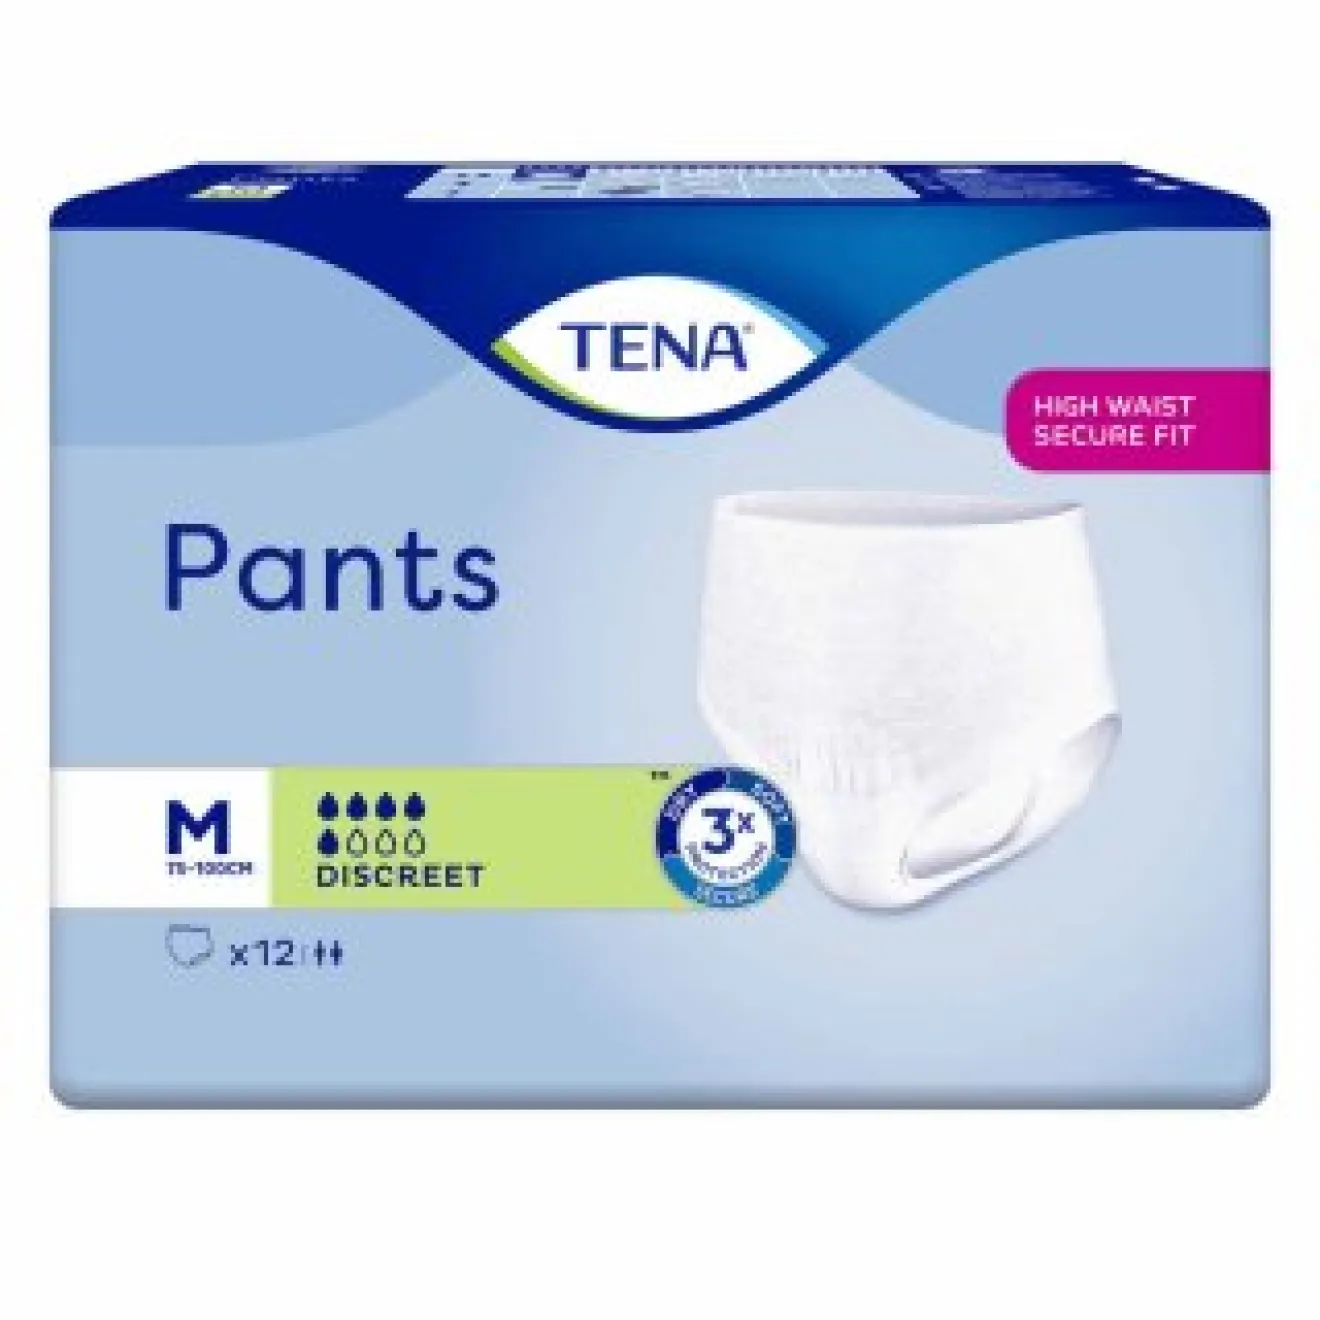 TENA Pants Discreet medium 4x12 ST